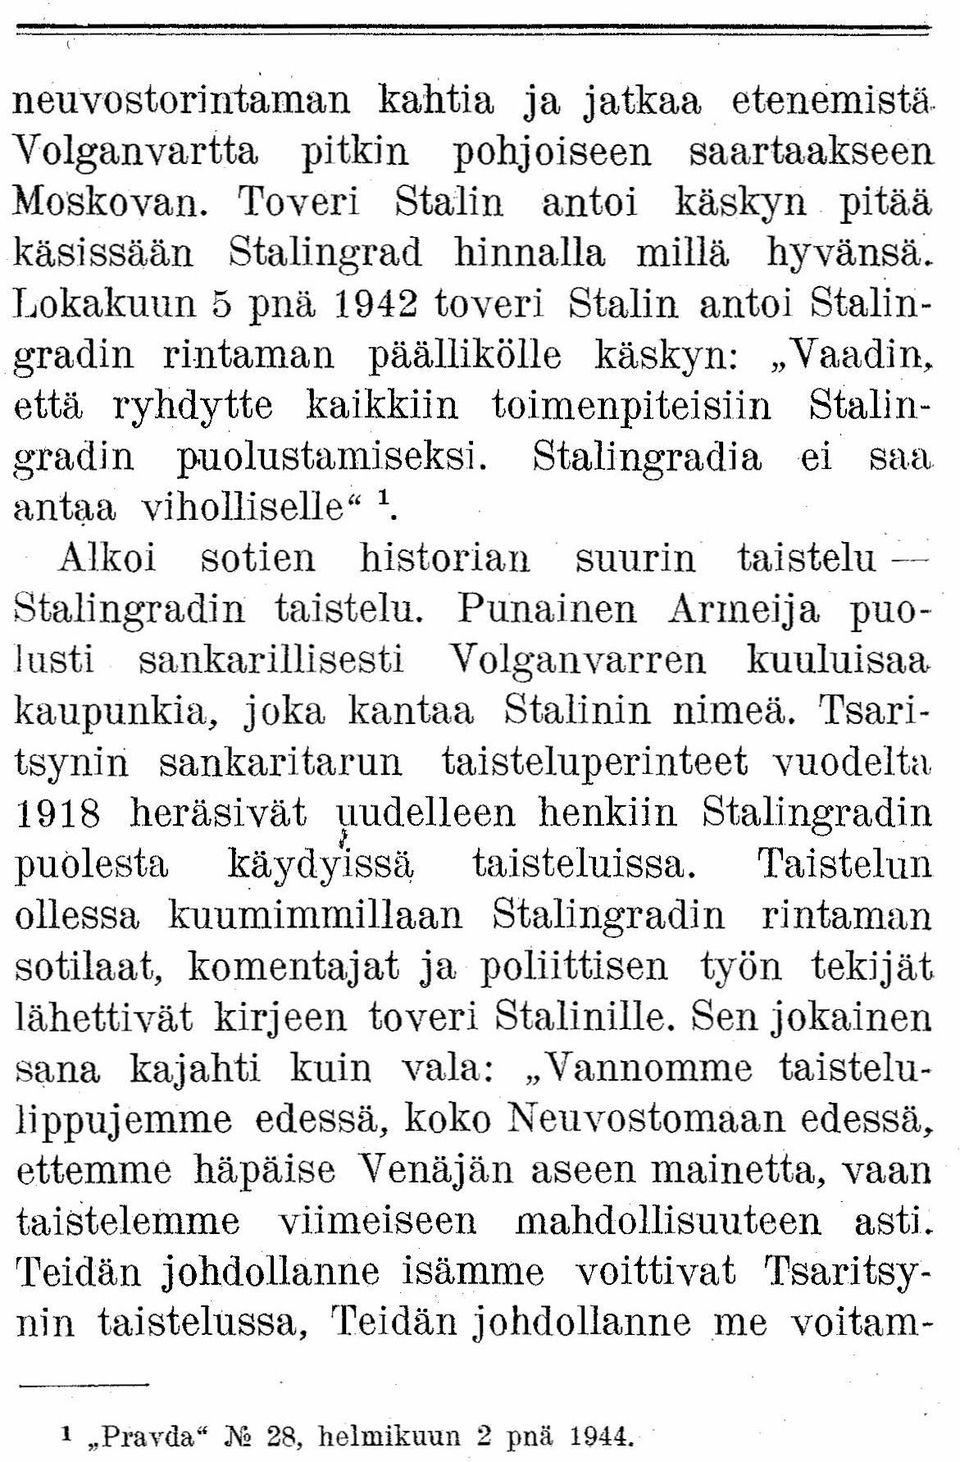 antaa viholliselle" 1. Alkoi sotien historian suurin taistelu ~ StalingradiIi taistelu. Punainen Armeija puo- ]usti sankarillisesti Volganvarren kuuluisaa kaupunkia, joka kantaa Stalinin nimeä.